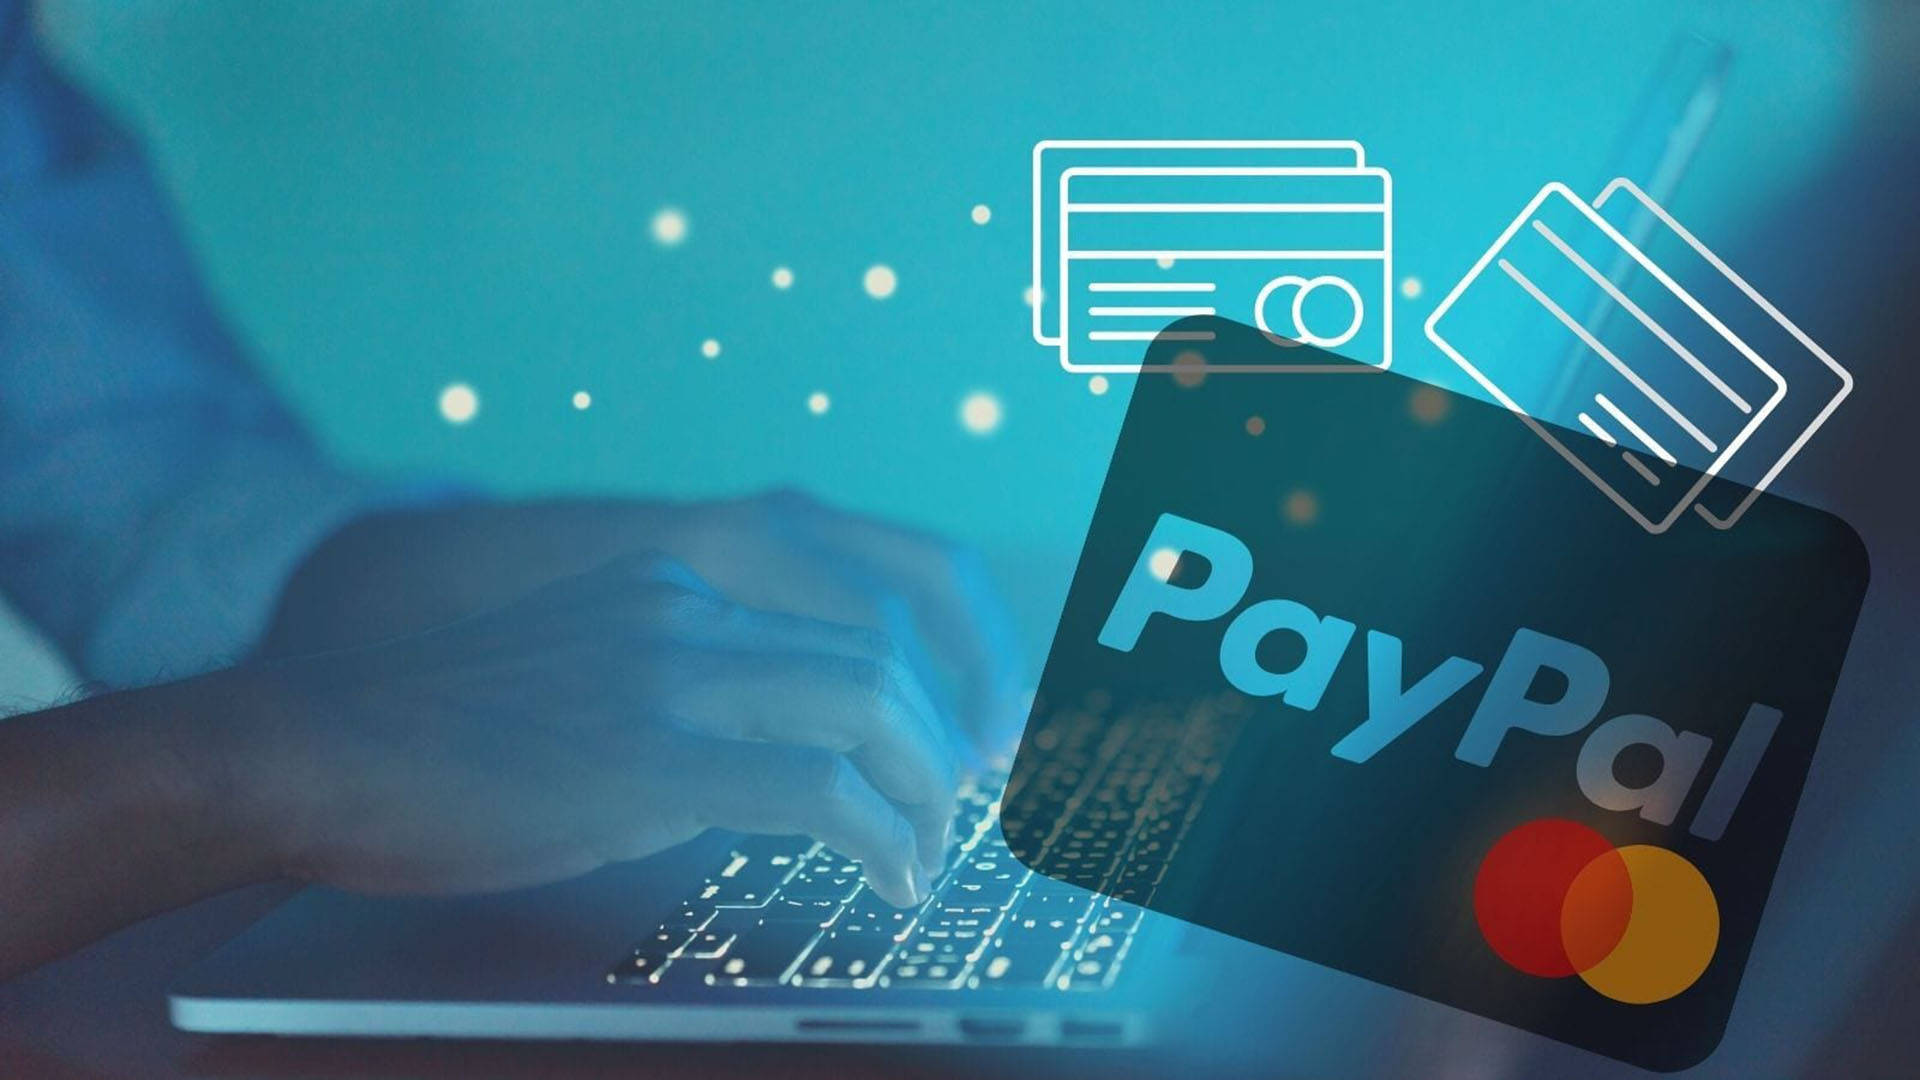 Paypal And Mastercard Wallpaper